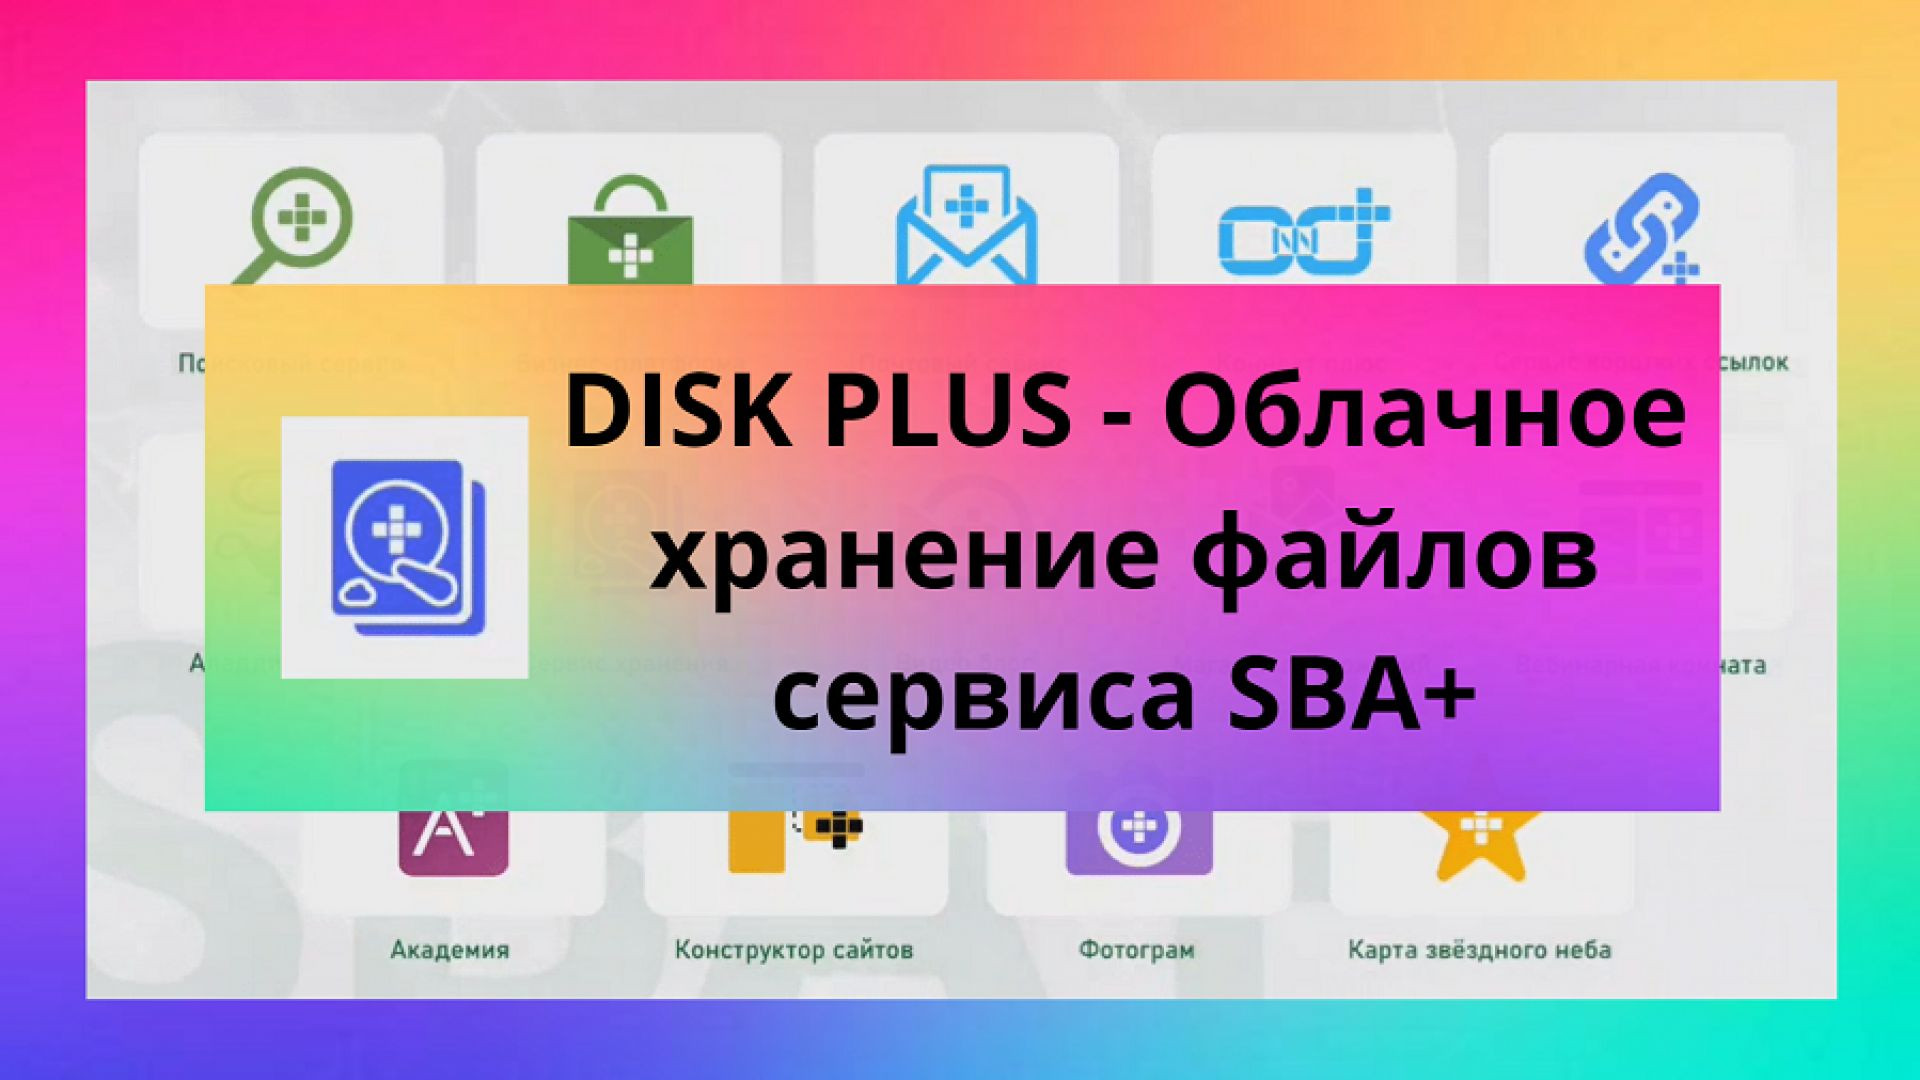 DISK PLUS - Облачное хранение файлов сервиса SBA+.